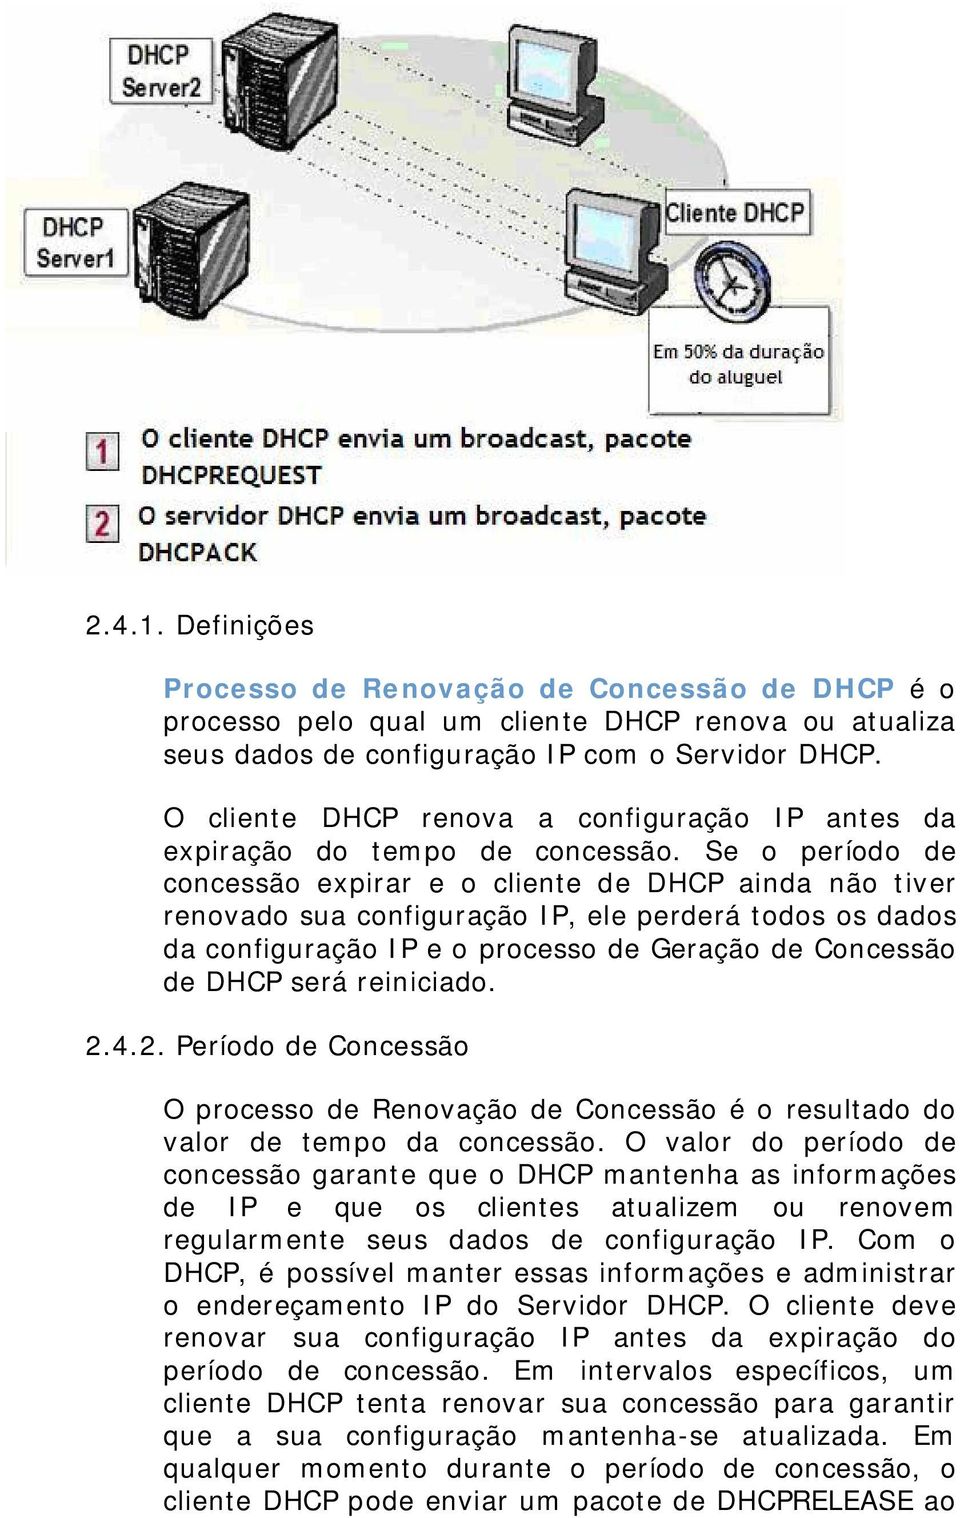 Se o período de concessão expirar e o cliente de DHCP ainda não tiver renovado sua configuração IP, ele perderá todos os dados da configuração IP e o processo de Geração de Concessão de DHCP será